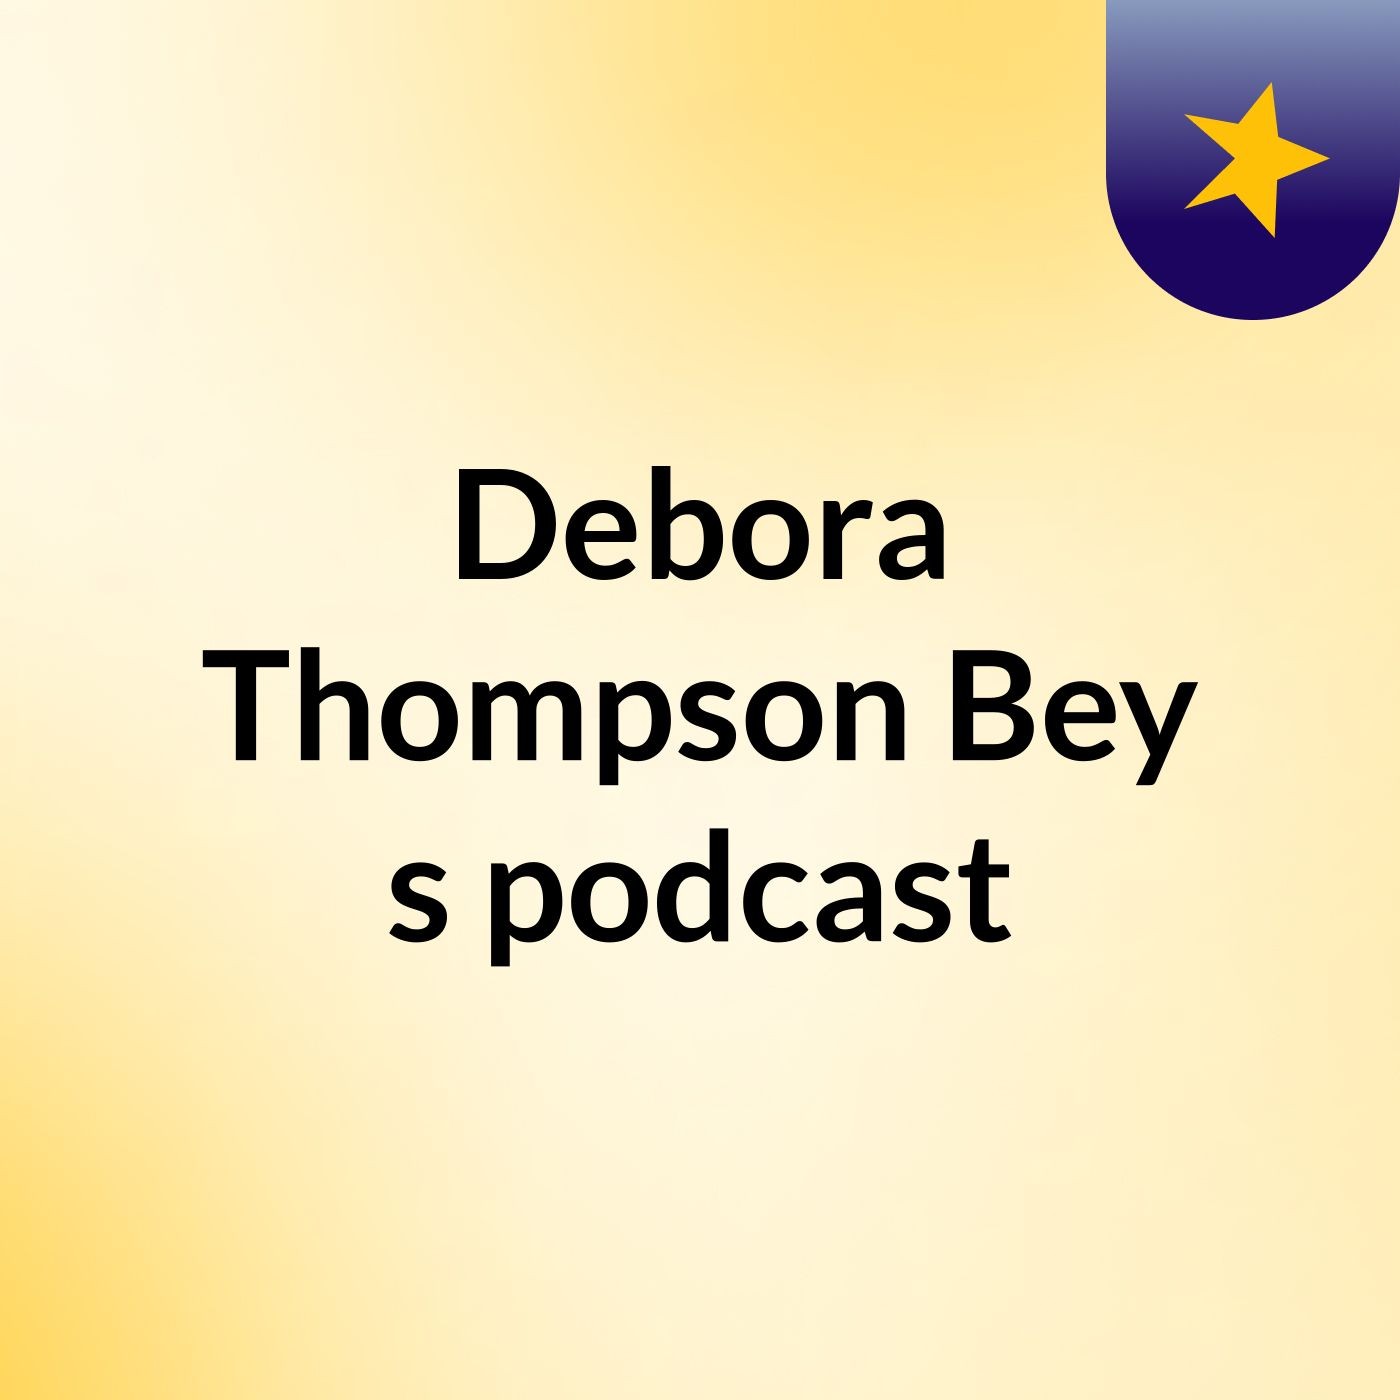 Debora Thompson Bey’s podcast